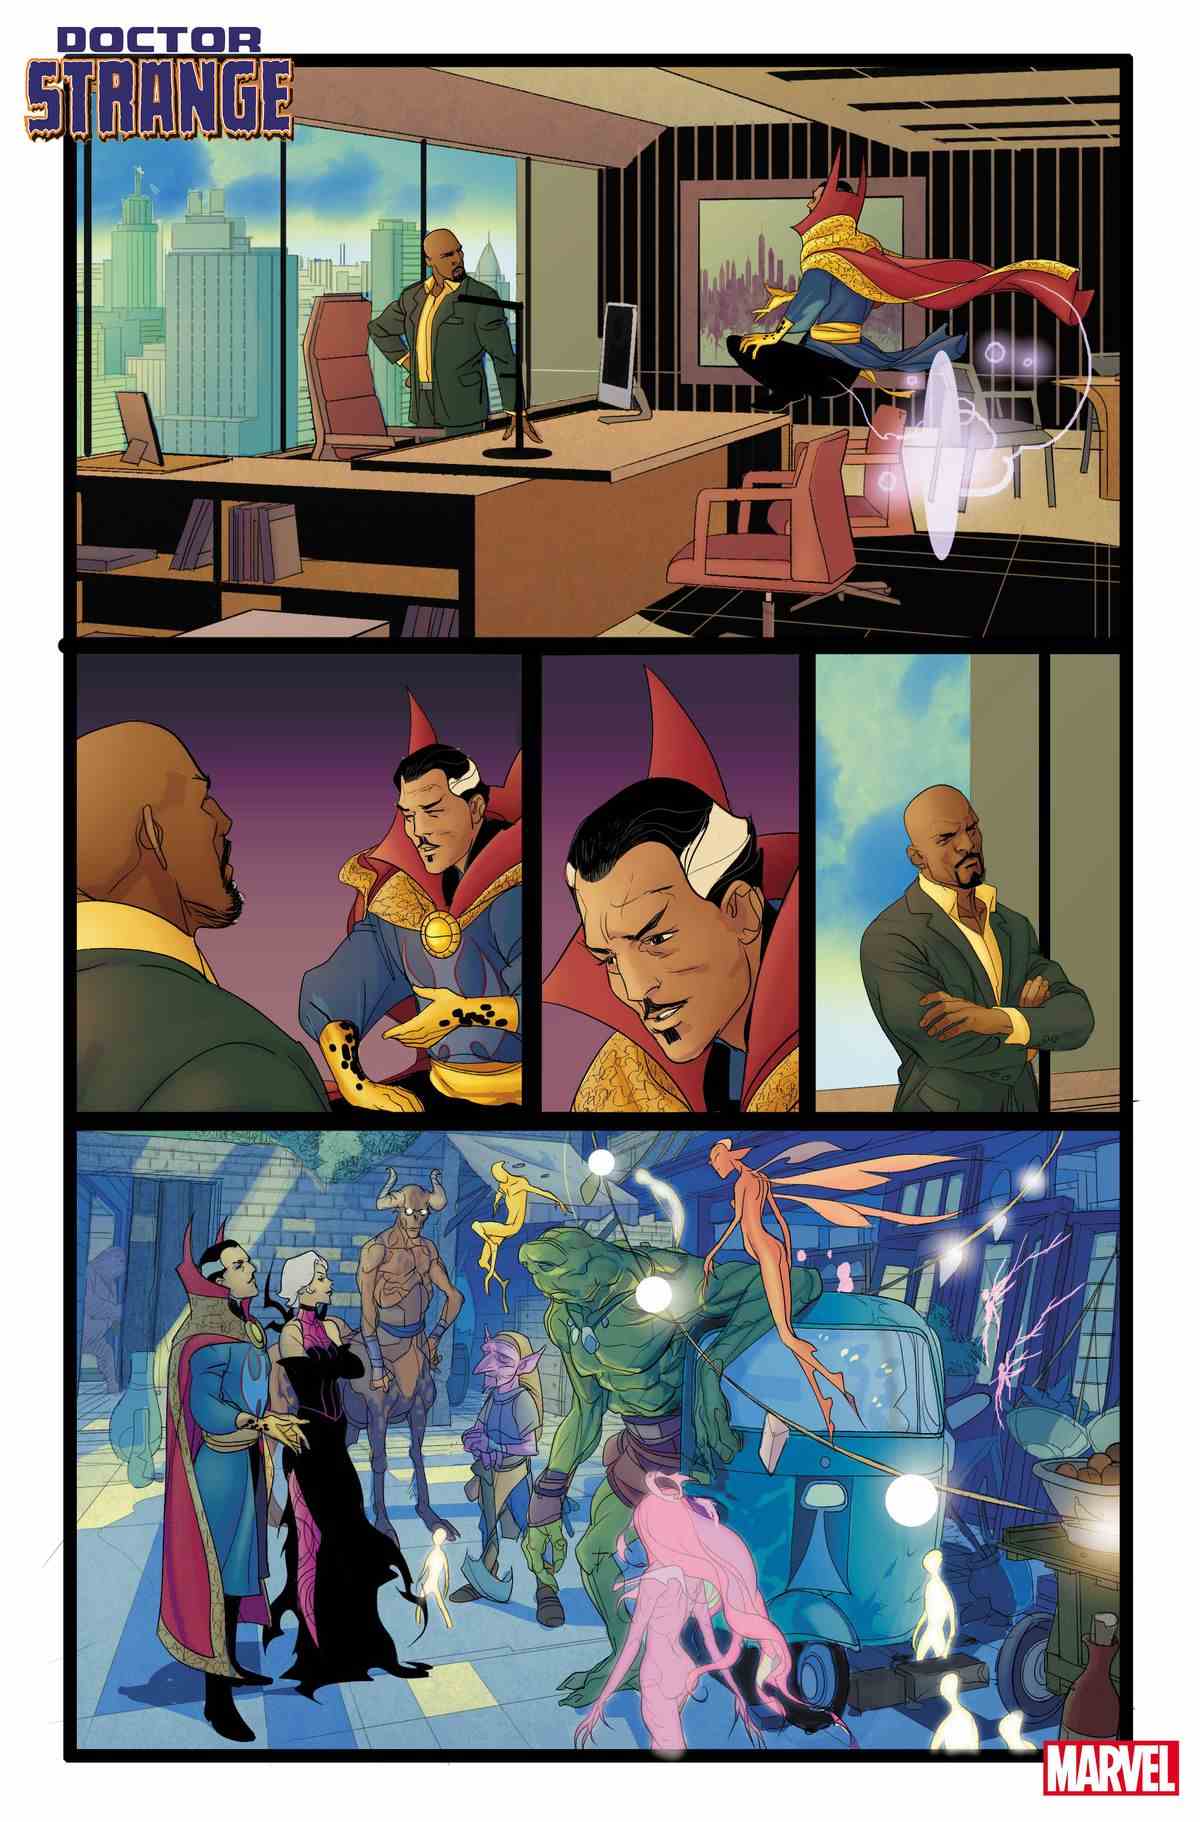 Le docteur Strange s'entretient avec Luke Cage, maire de New York, dans son bureau ;  puis Clea et Strange sont vus en train de parler avec une demi-douzaine d'étranges créatures magiques dans la rue dans Doctor Strange # 1 (2023).